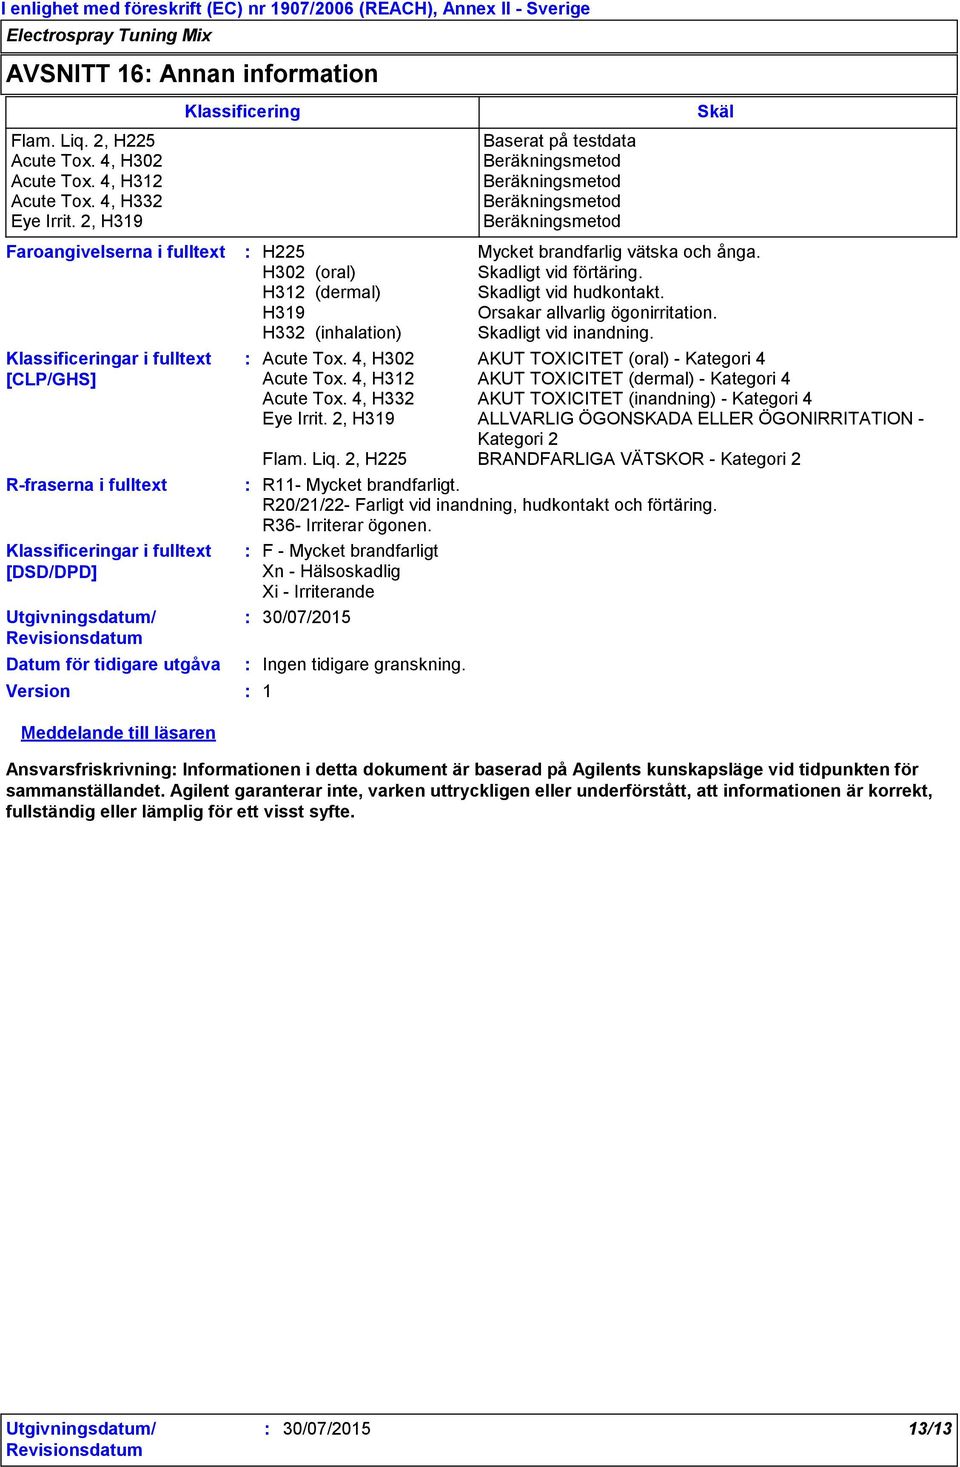 Klassificering F - Mycket brandfarligt Xn - Hälsoskadlig Xi - Irriterande 30/07/2015 H225 H302 (oral) H312 (dermal) H319 H332 (inhalation) Baserat på testdata Beräkningsmetod Beräkningsmetod